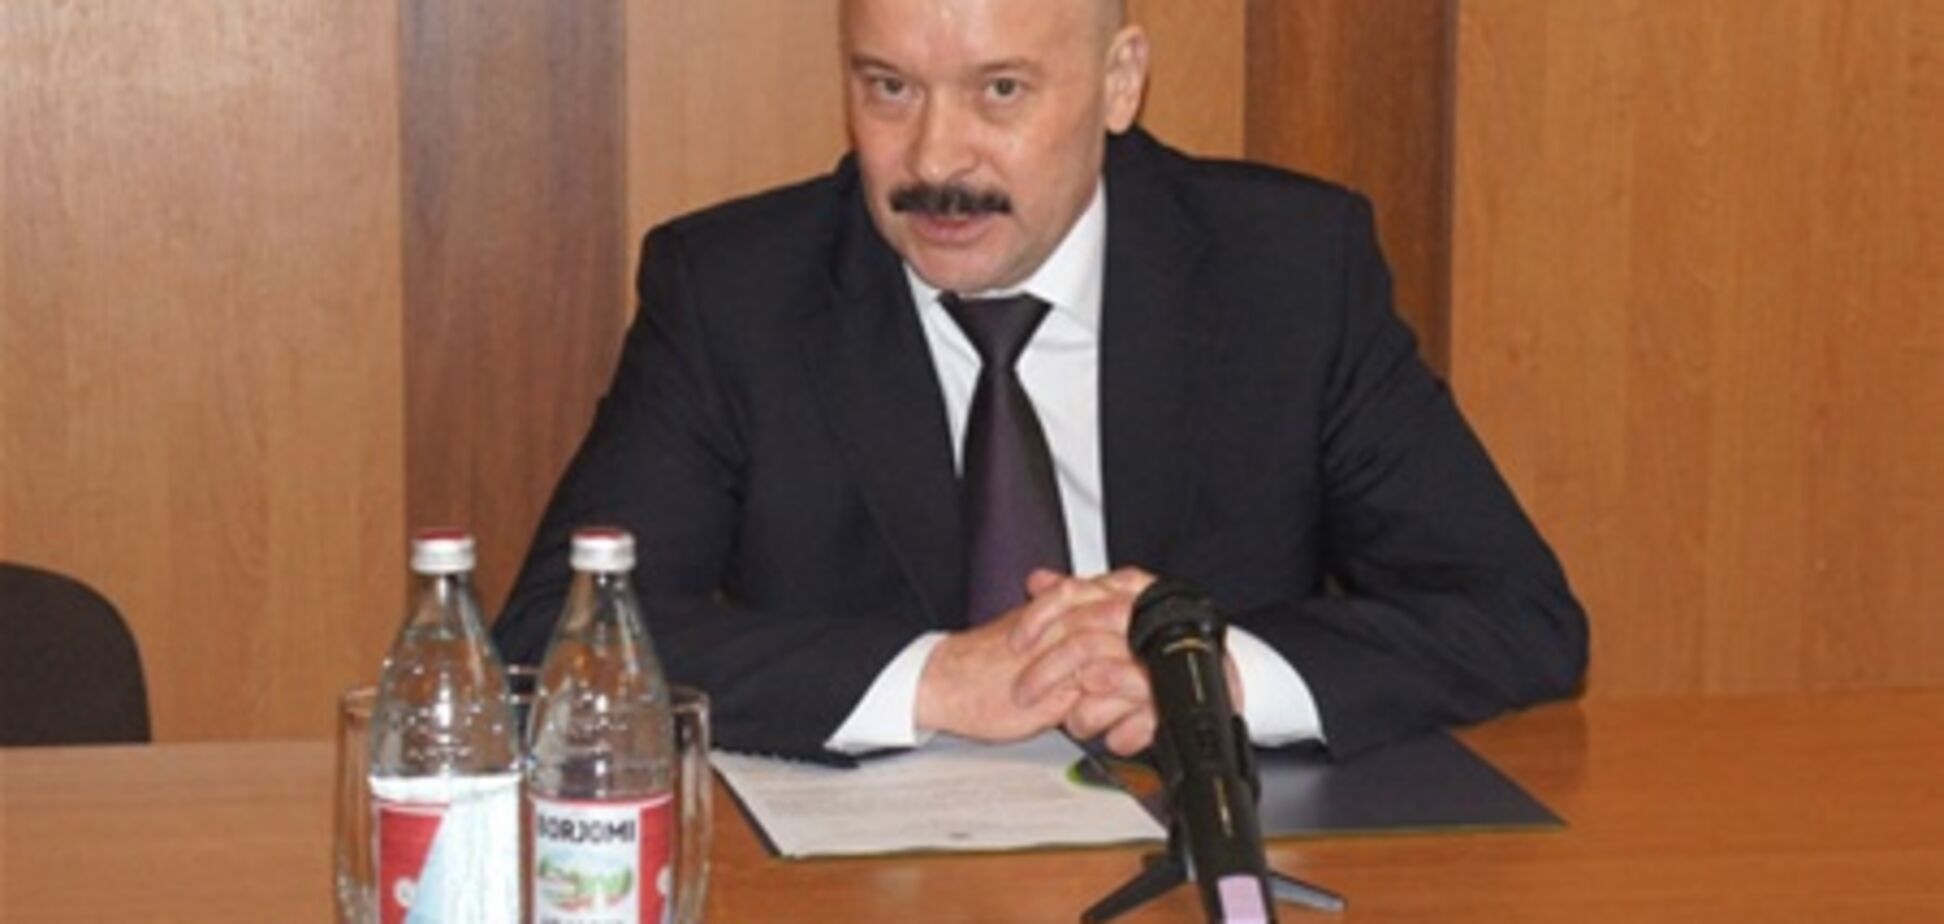 Болотских стал председателем Госслужбы по чрезвычайным ситуациям